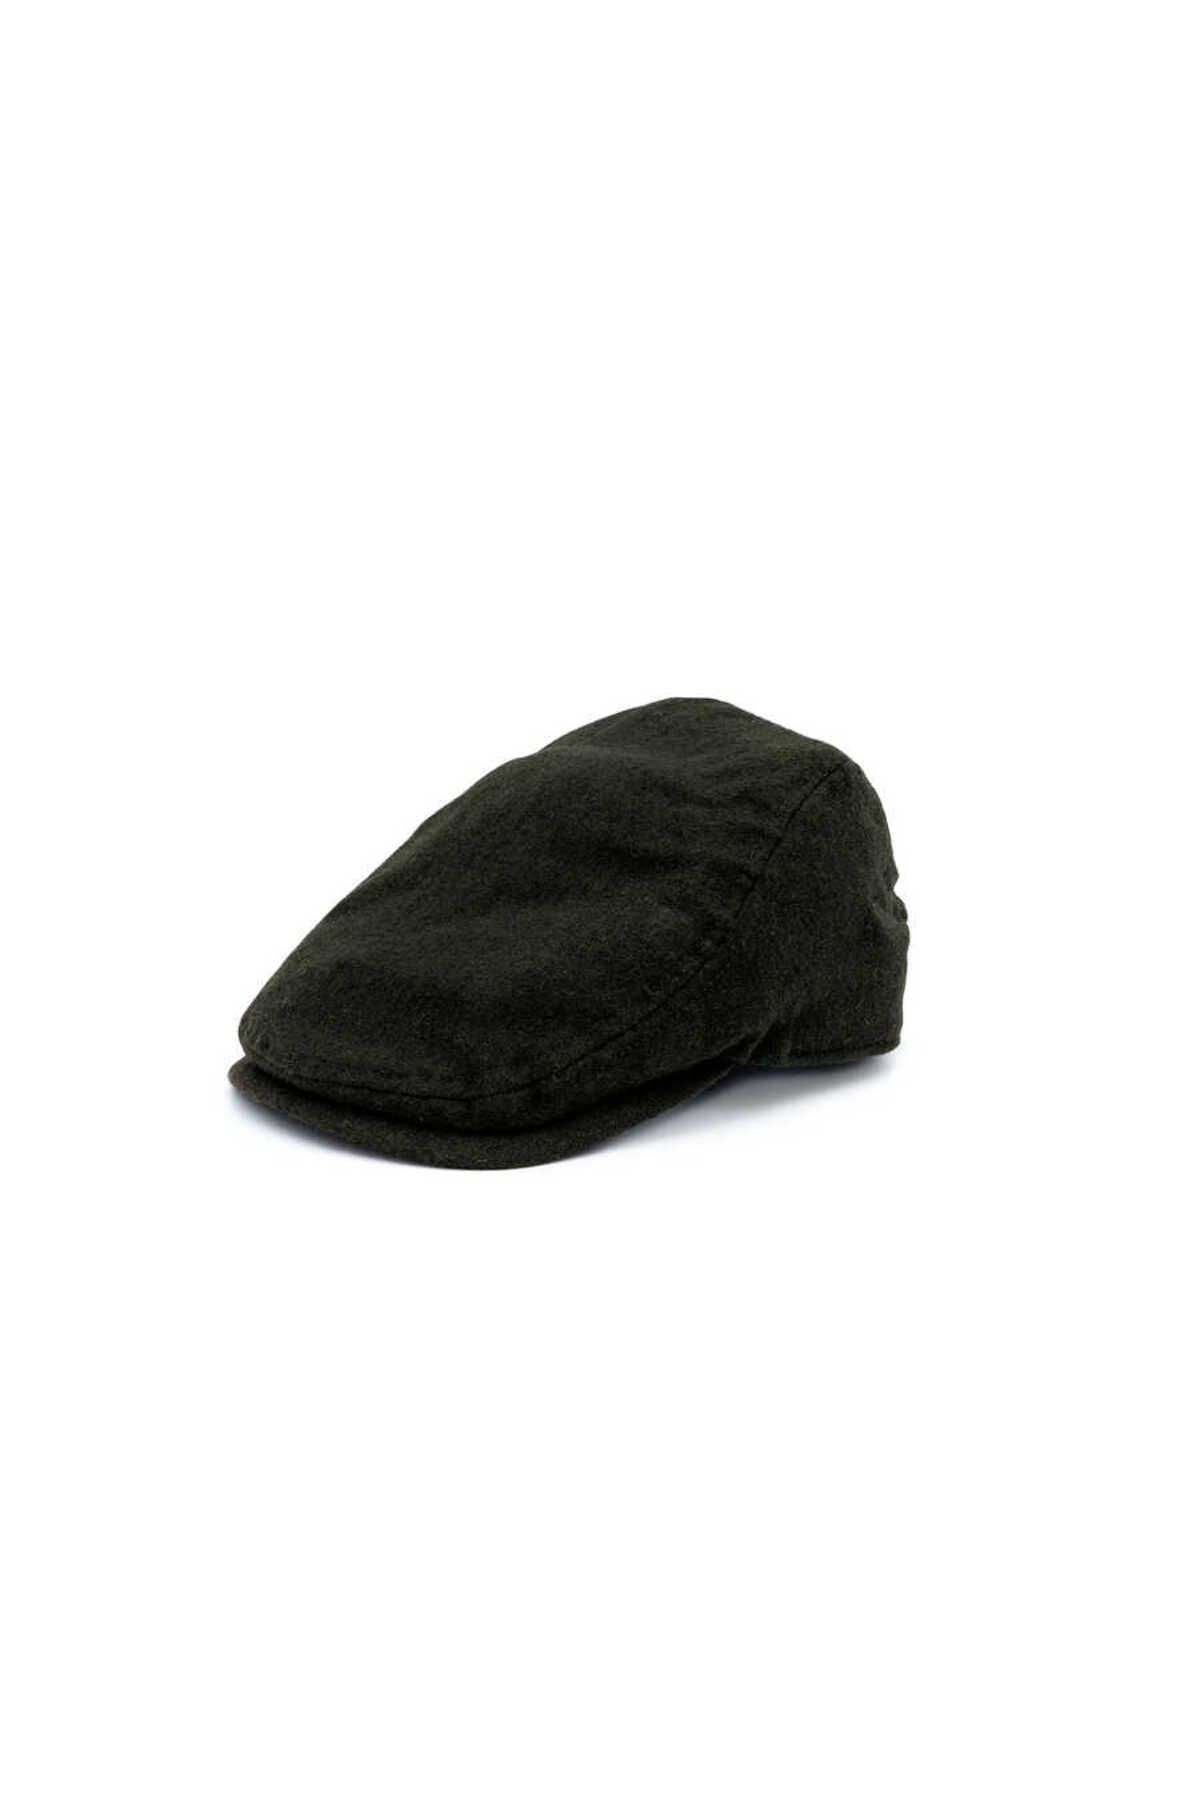 Goorin Bros Goorin Bros Casket Hat 603-0005 Mikey Green S/M